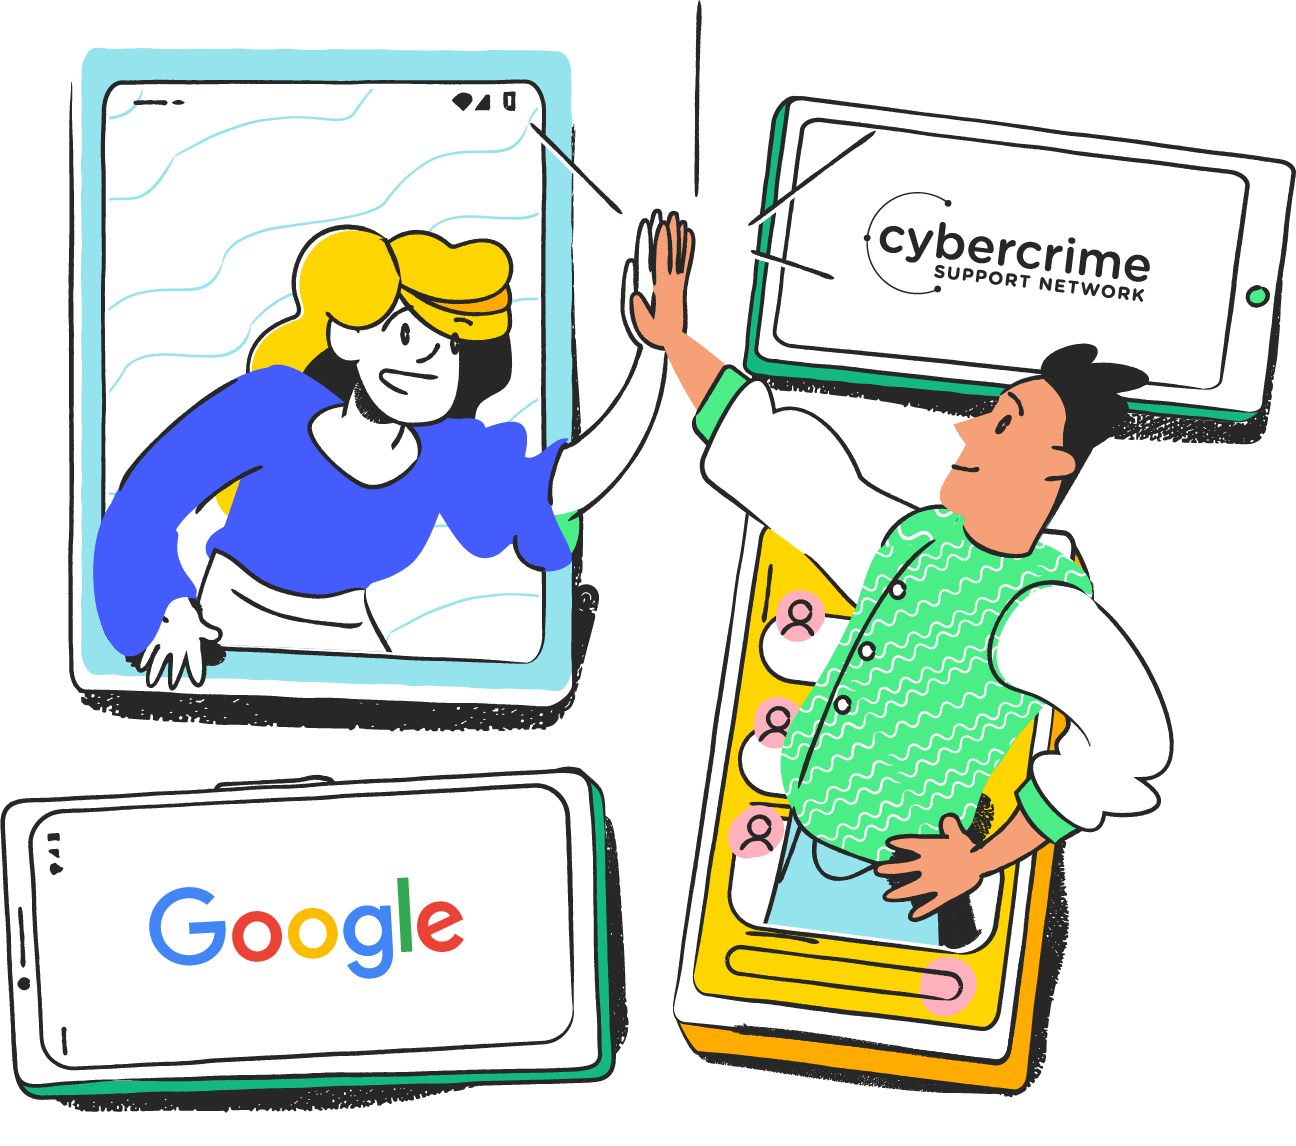 Les membres de l'équipe de Google et du Cybercrime Support Network sortent comme par magie de leurs appareils pour un top cinq.